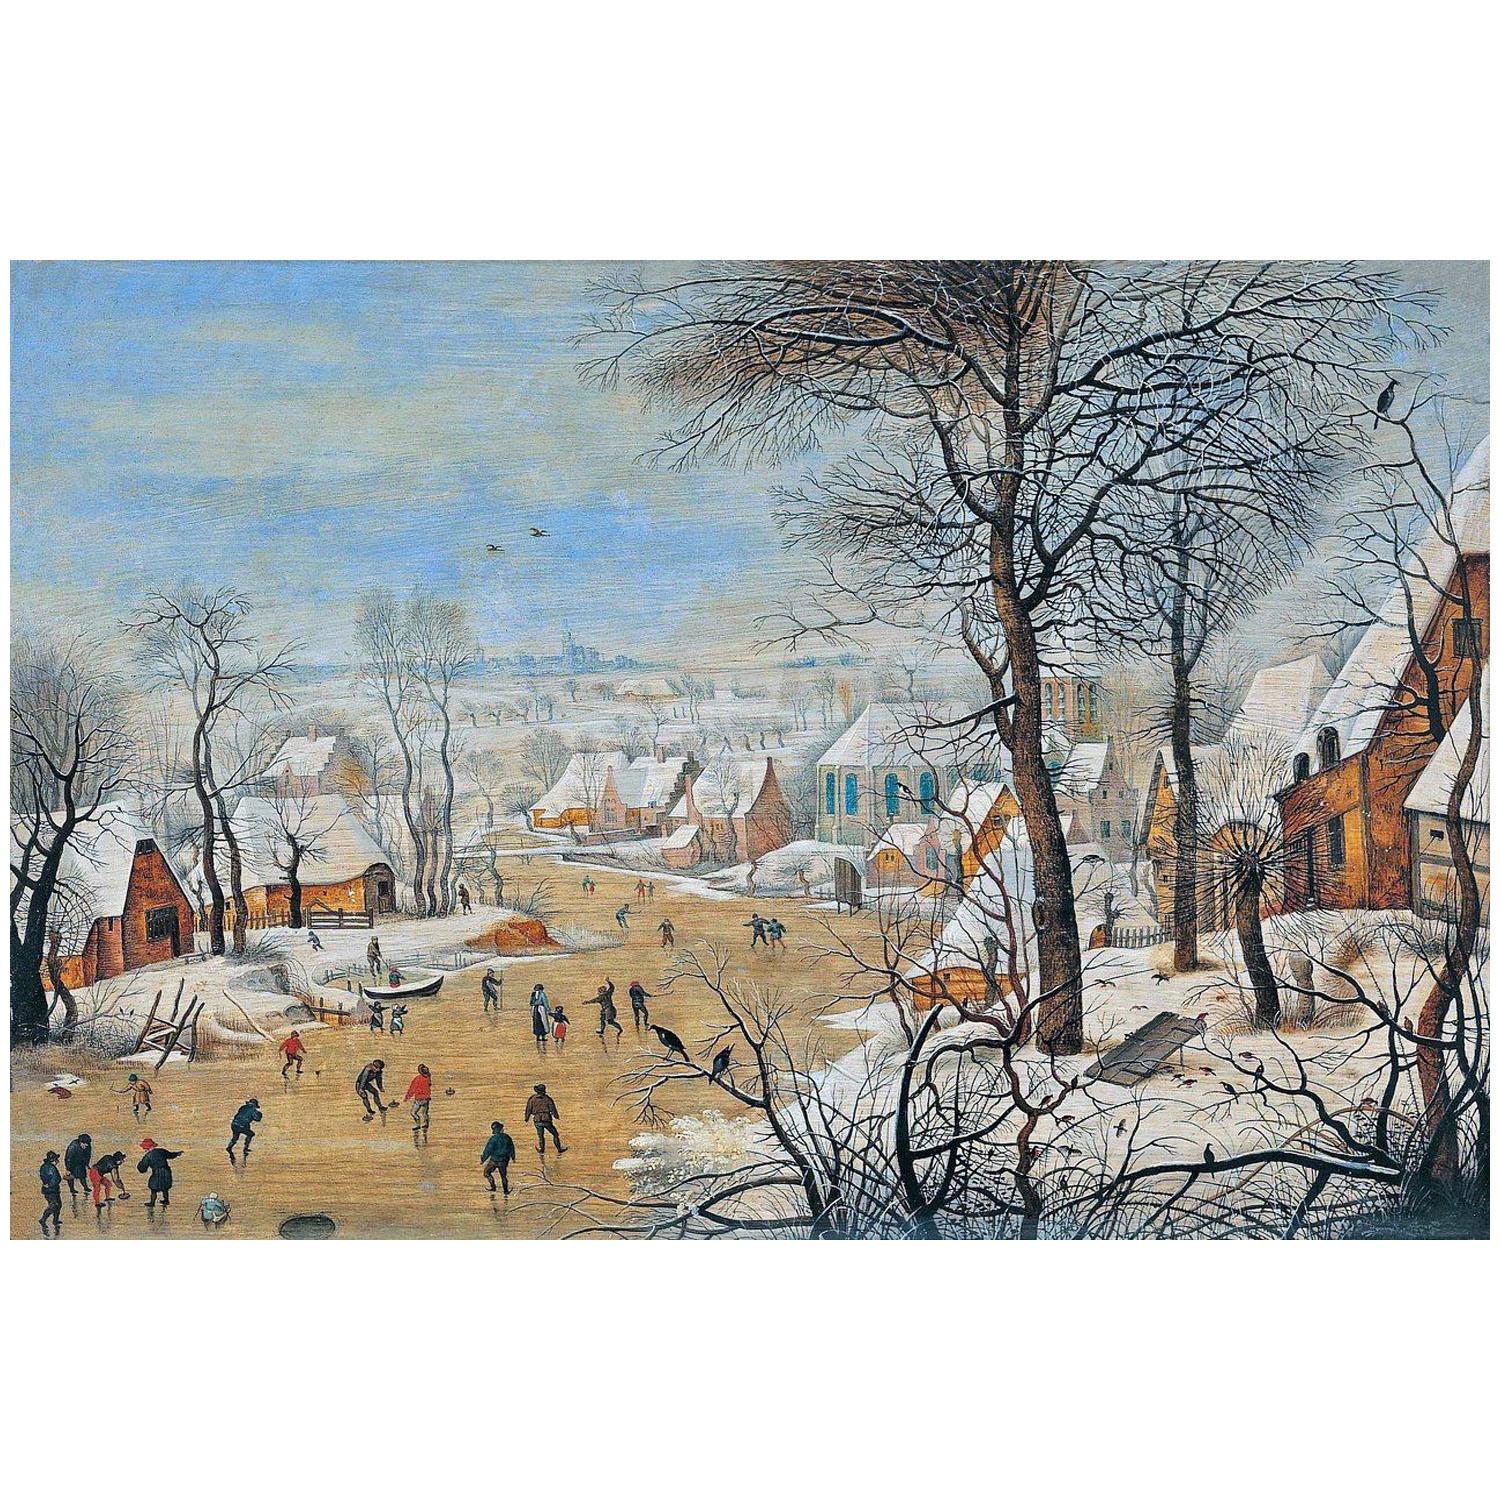 Питер Брейгель Младший. Зимний пейзаж с конькобежцами. 1615-1620. Эрмитаж